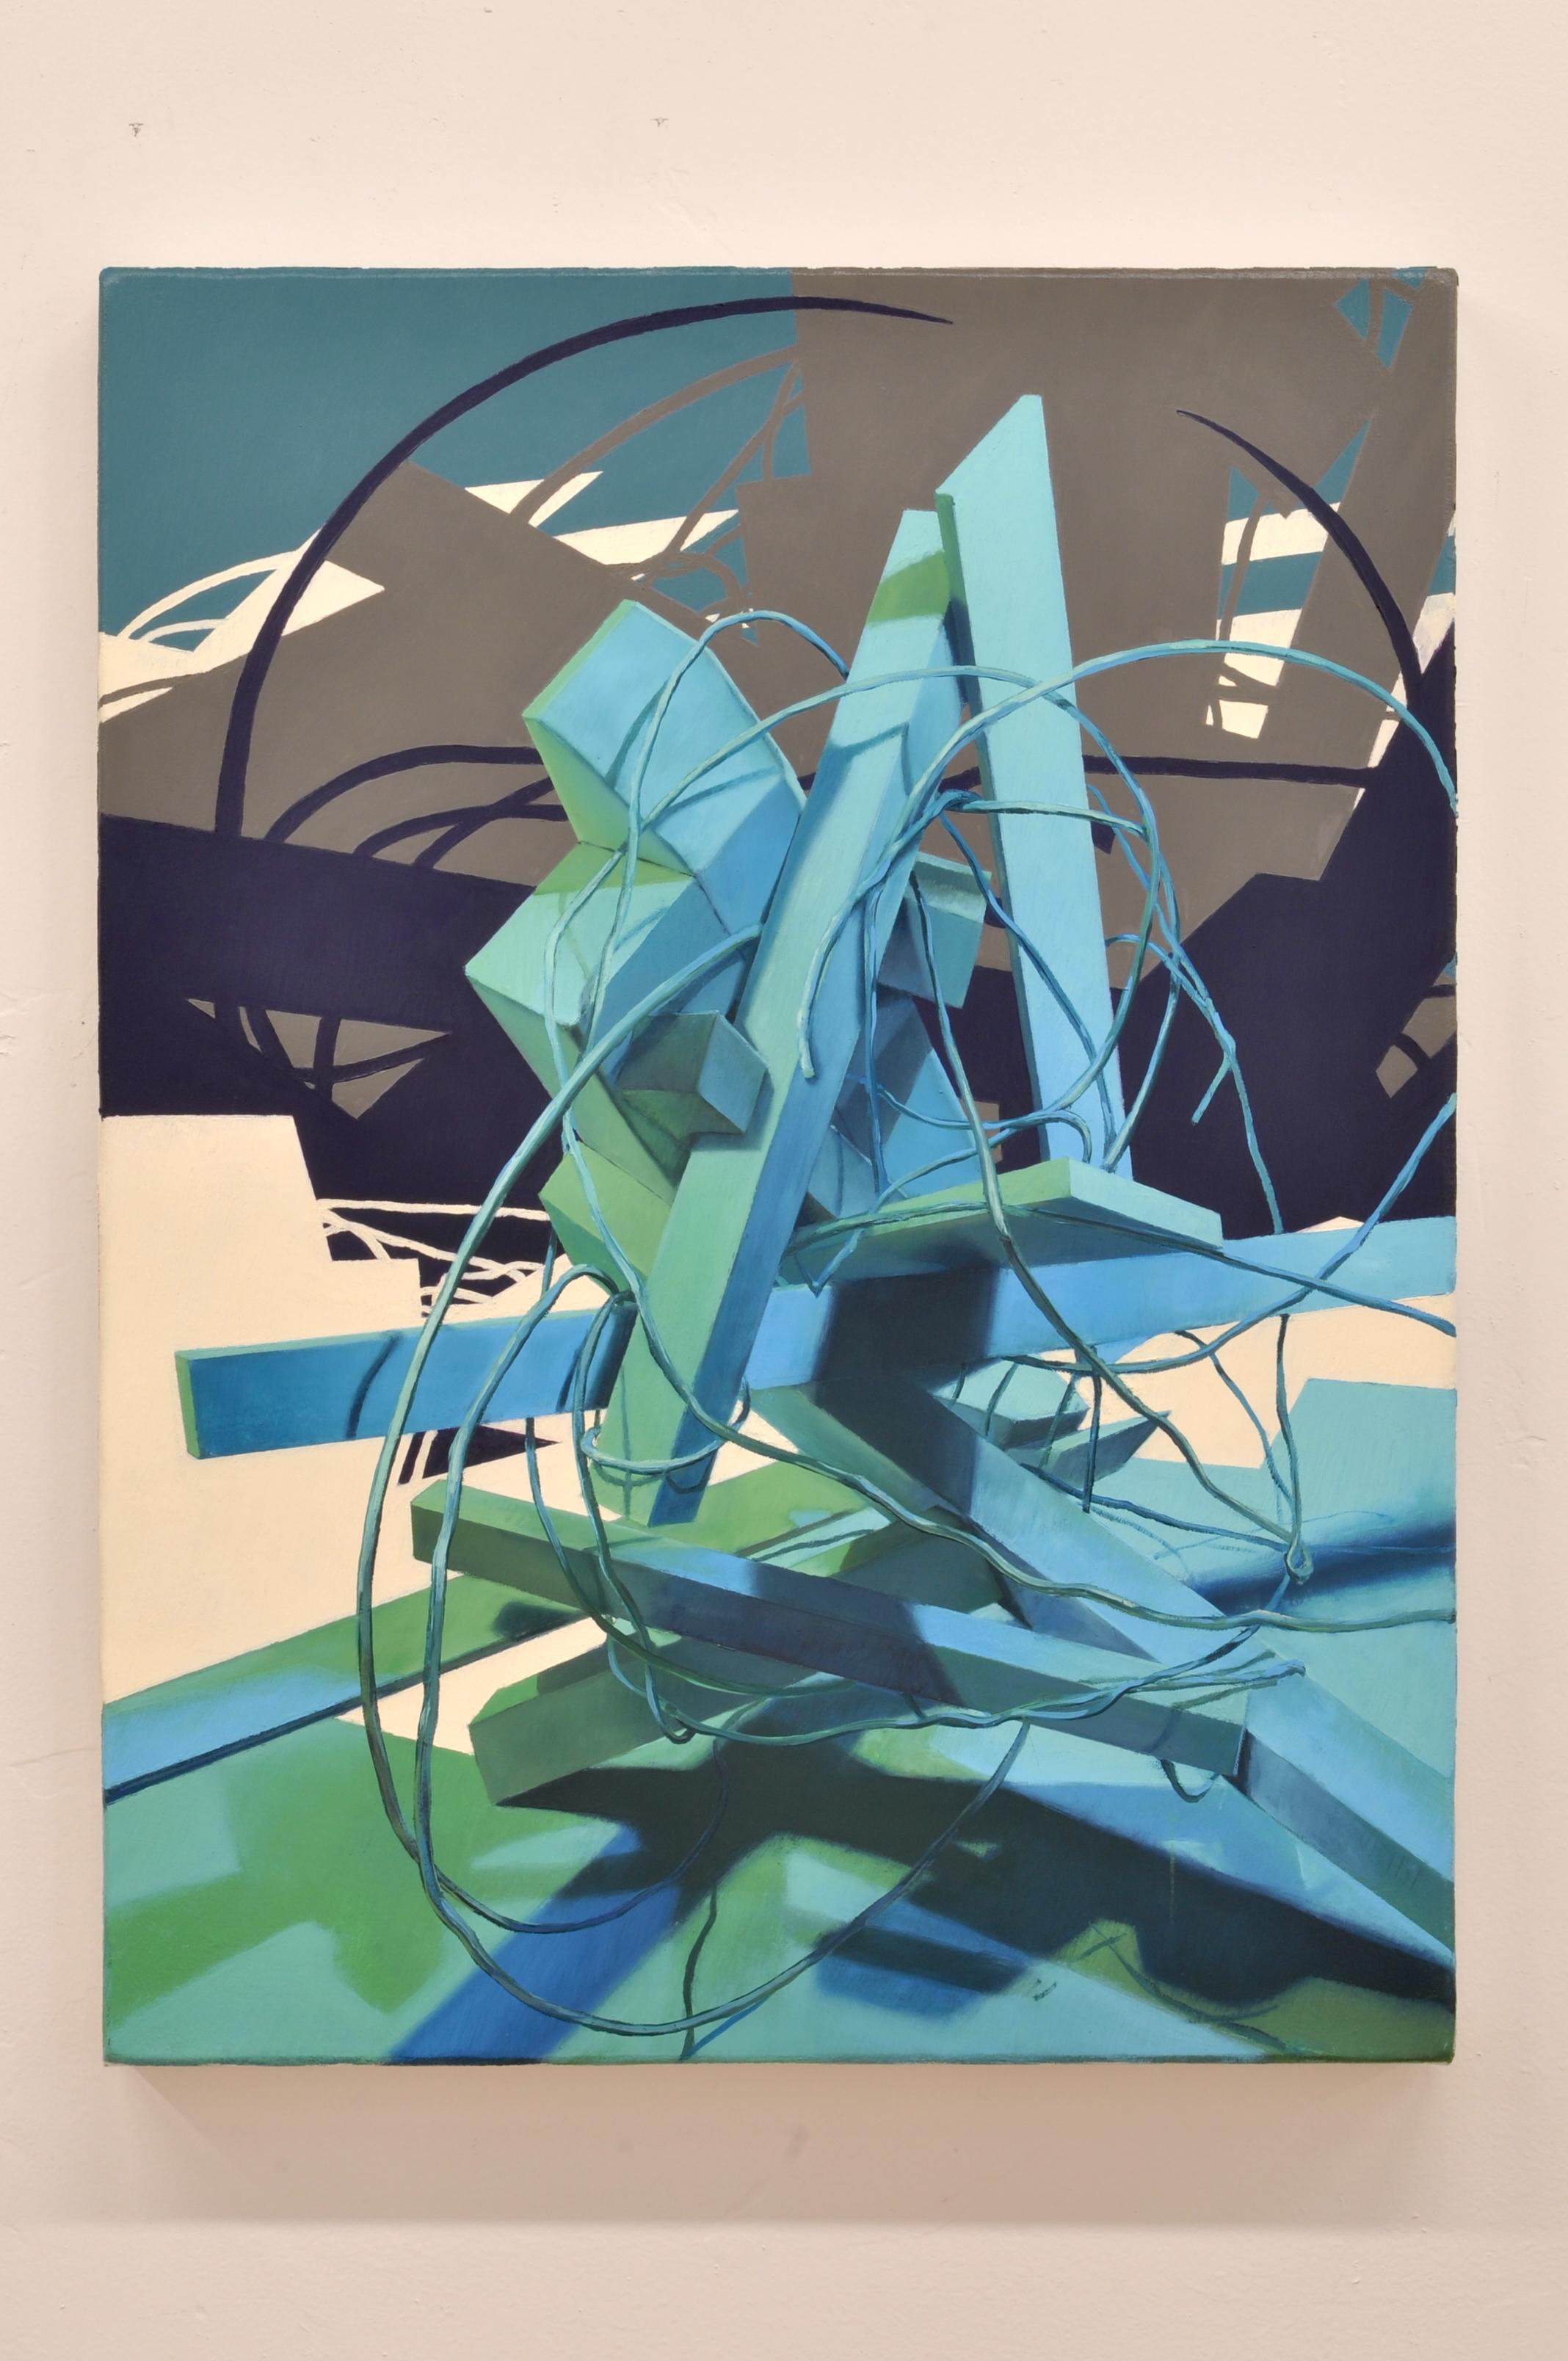 UNTITLED CONSTRUCT 2 - Abstraktes/Figuratives Ölgemälde in Grün, Blau und Grau – Painting von Donald Keefe